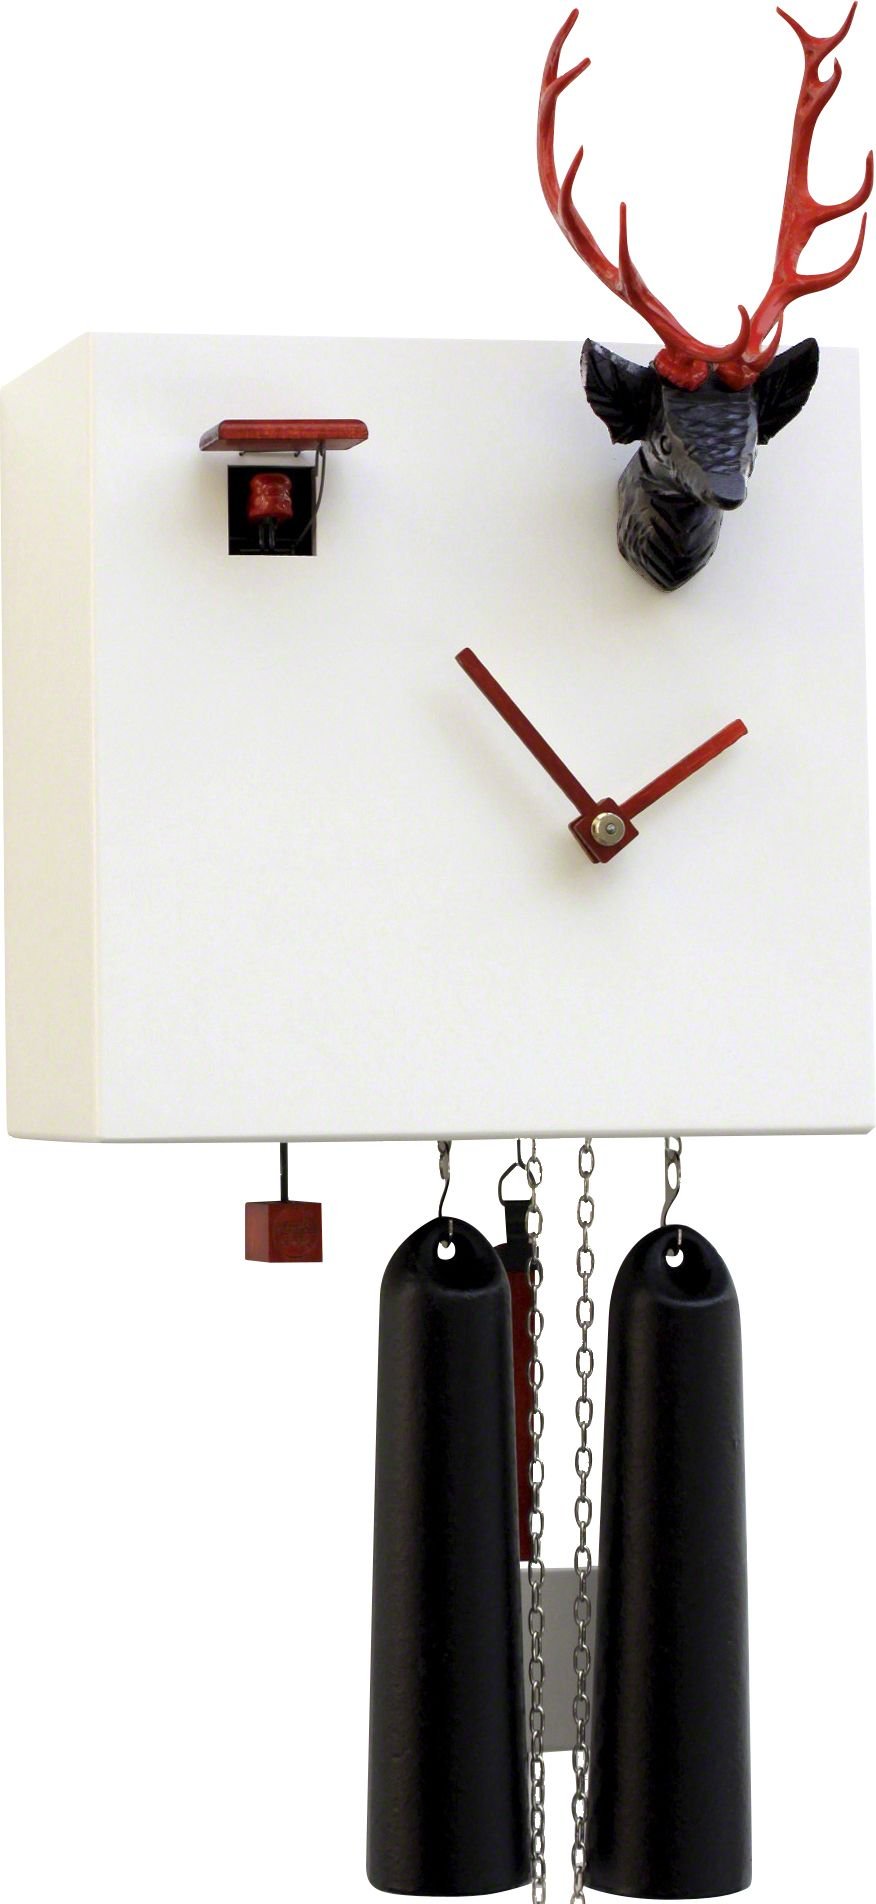 Moderne Kuckucksuhr 8-Tage-Uhrwerk 20cm von Rombach & Haas